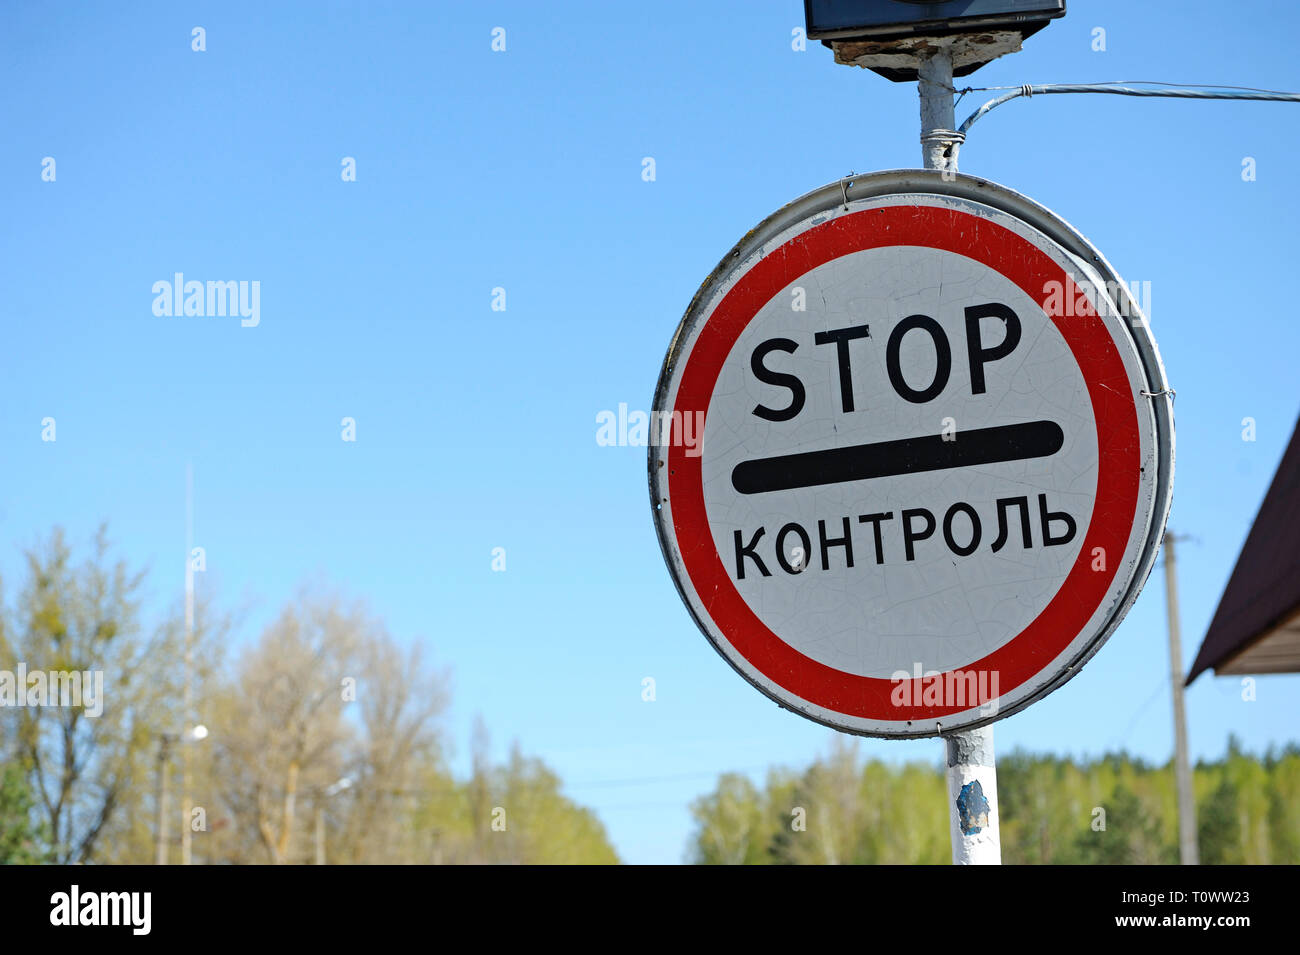 Stop e a veicolo in marcia dalla barriera sul punto di attraversamento Dytiatky su un modo di Chernobyl Zona di esclusione. Aprile 20,2018. Dytiatky, Ucraina Foto Stock